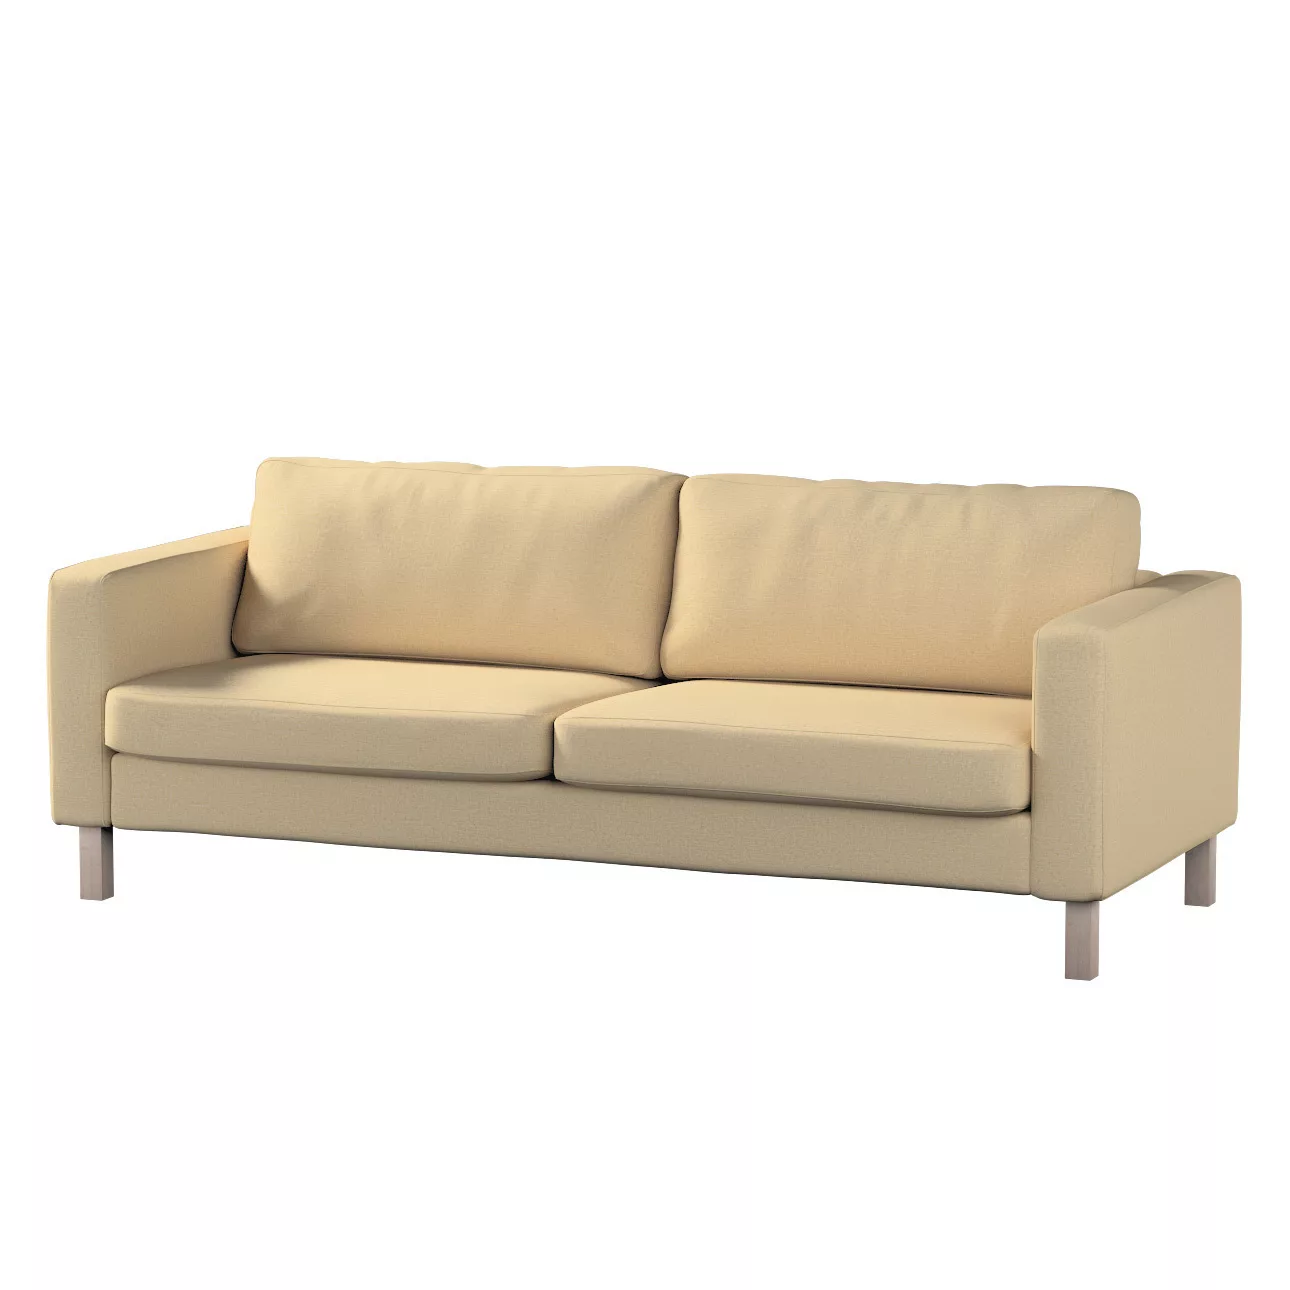 Bezug für Karlstad 3-Sitzer Sofa nicht ausklappbar, kurz, sandfarben, Bezug günstig online kaufen